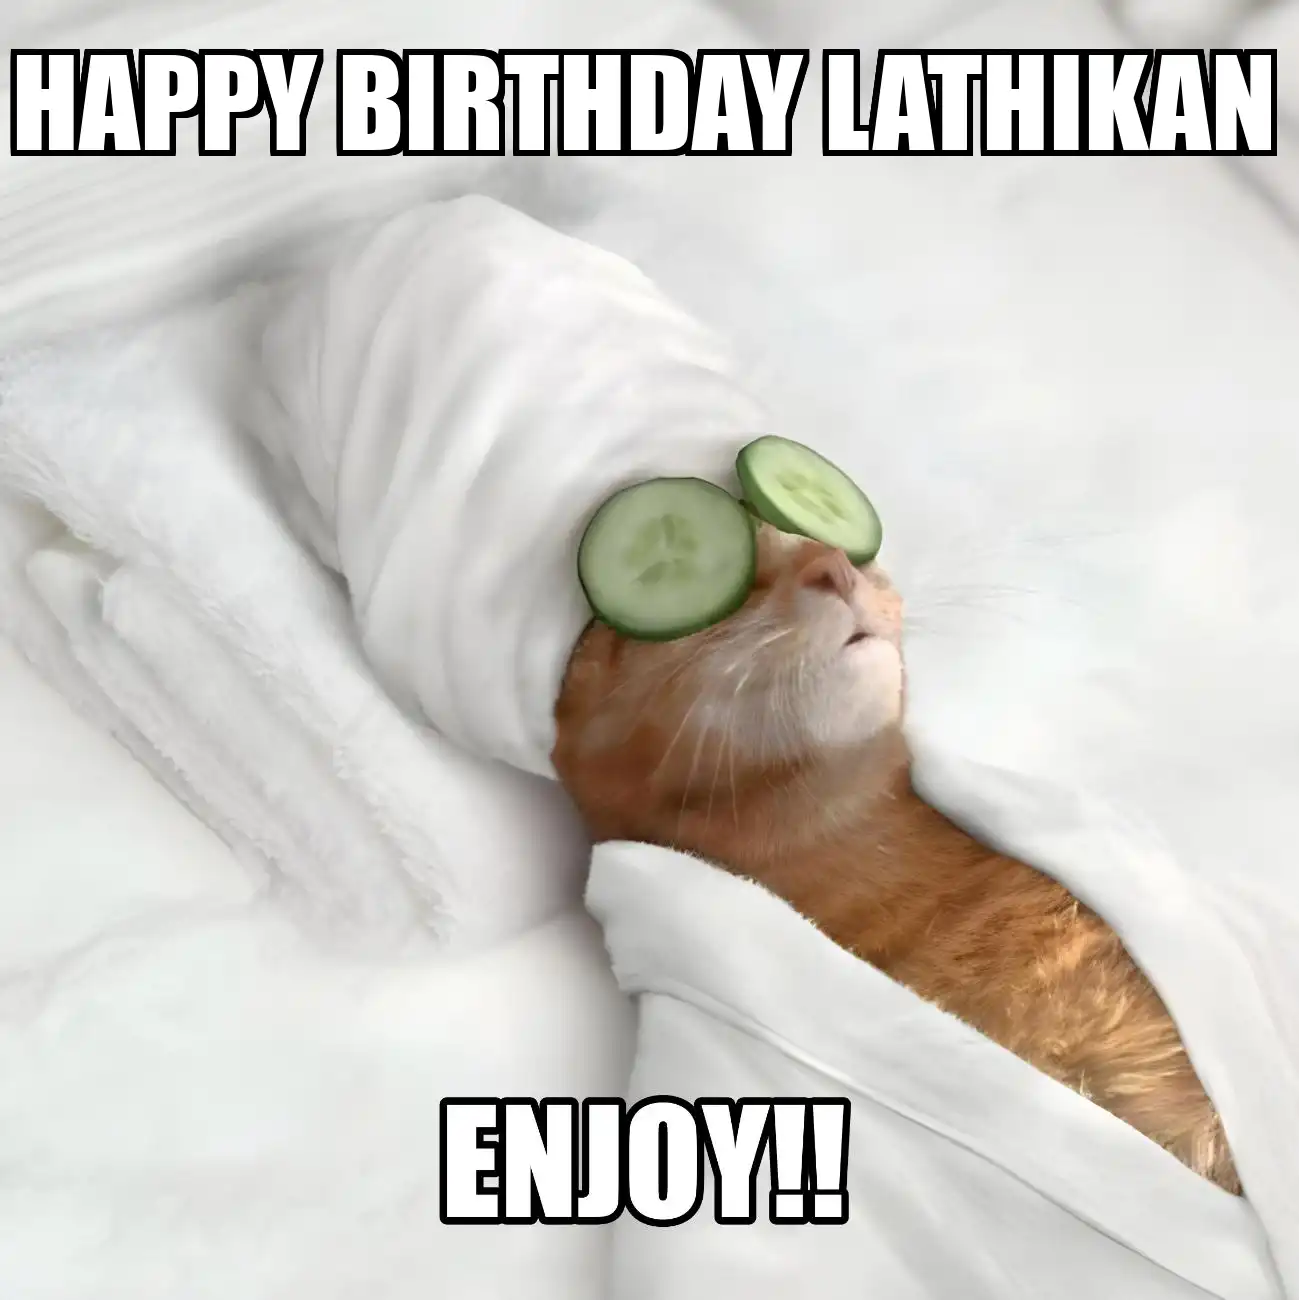 Happy Birthday Lathikan Enjoy Cat Meme